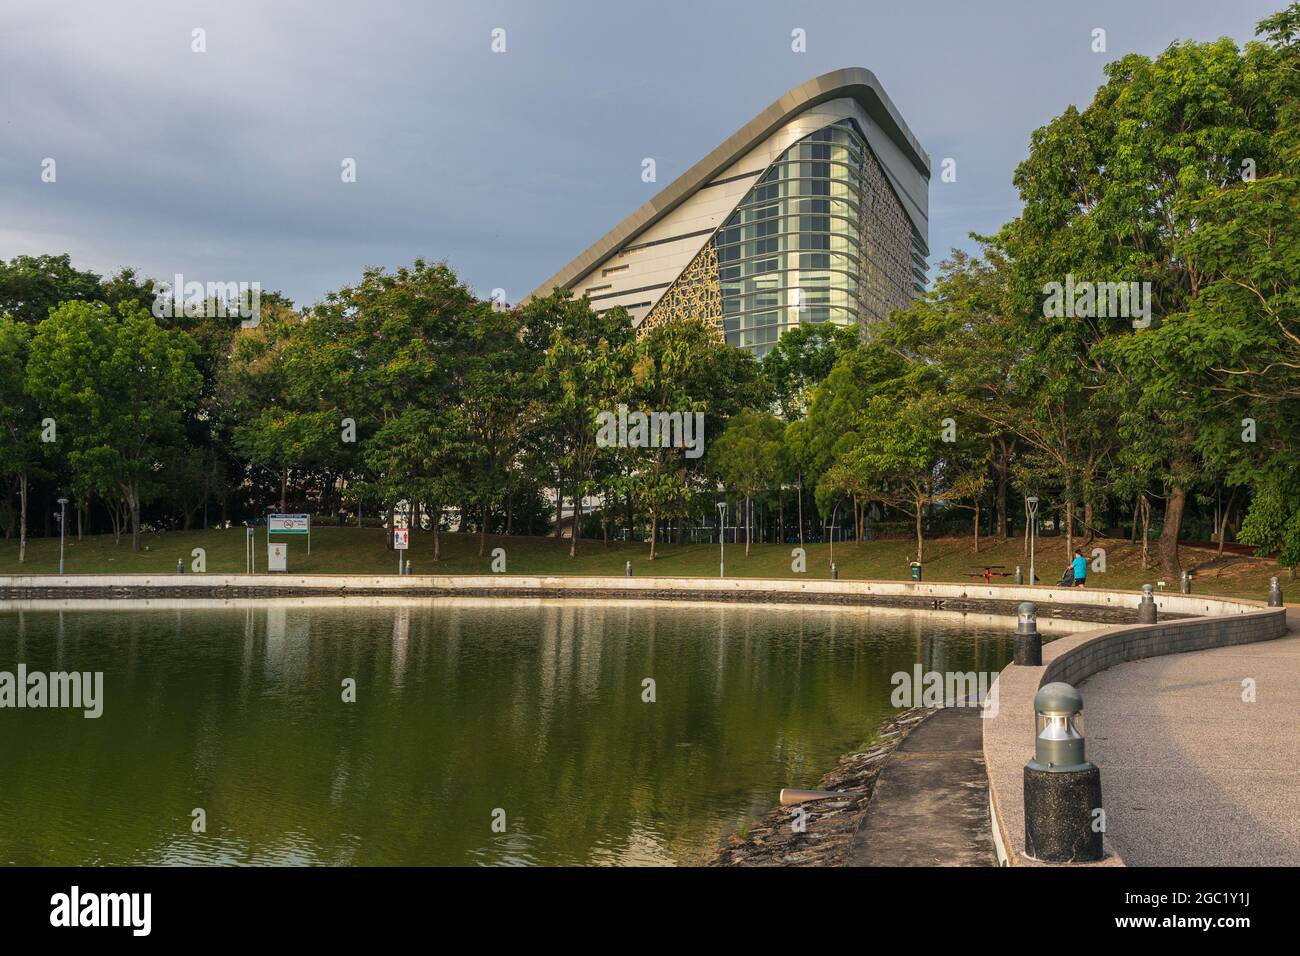 Kota Kinabalu, Sabah, Malaysia - April 24, 2021 : Beautiful library building view from Perdana Park, Tanjung aru Kota Kinabalu,Sabah, Malaysia Stock Photo